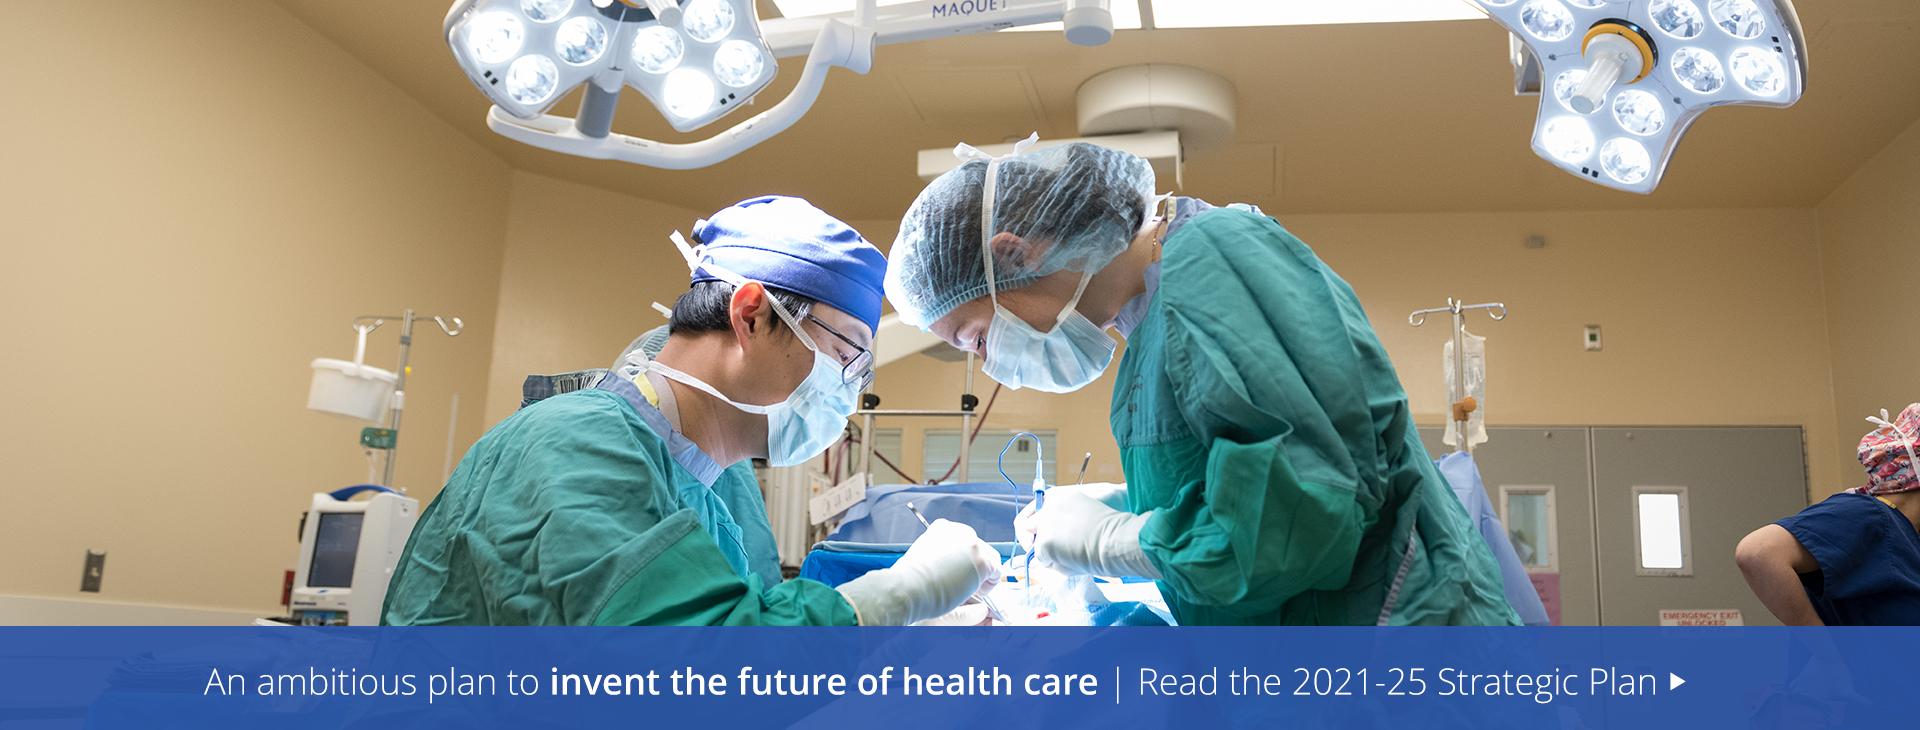 创造医疗保健未来的雄心勃勃的计划:2021-25年森尼布鲁克战略计划